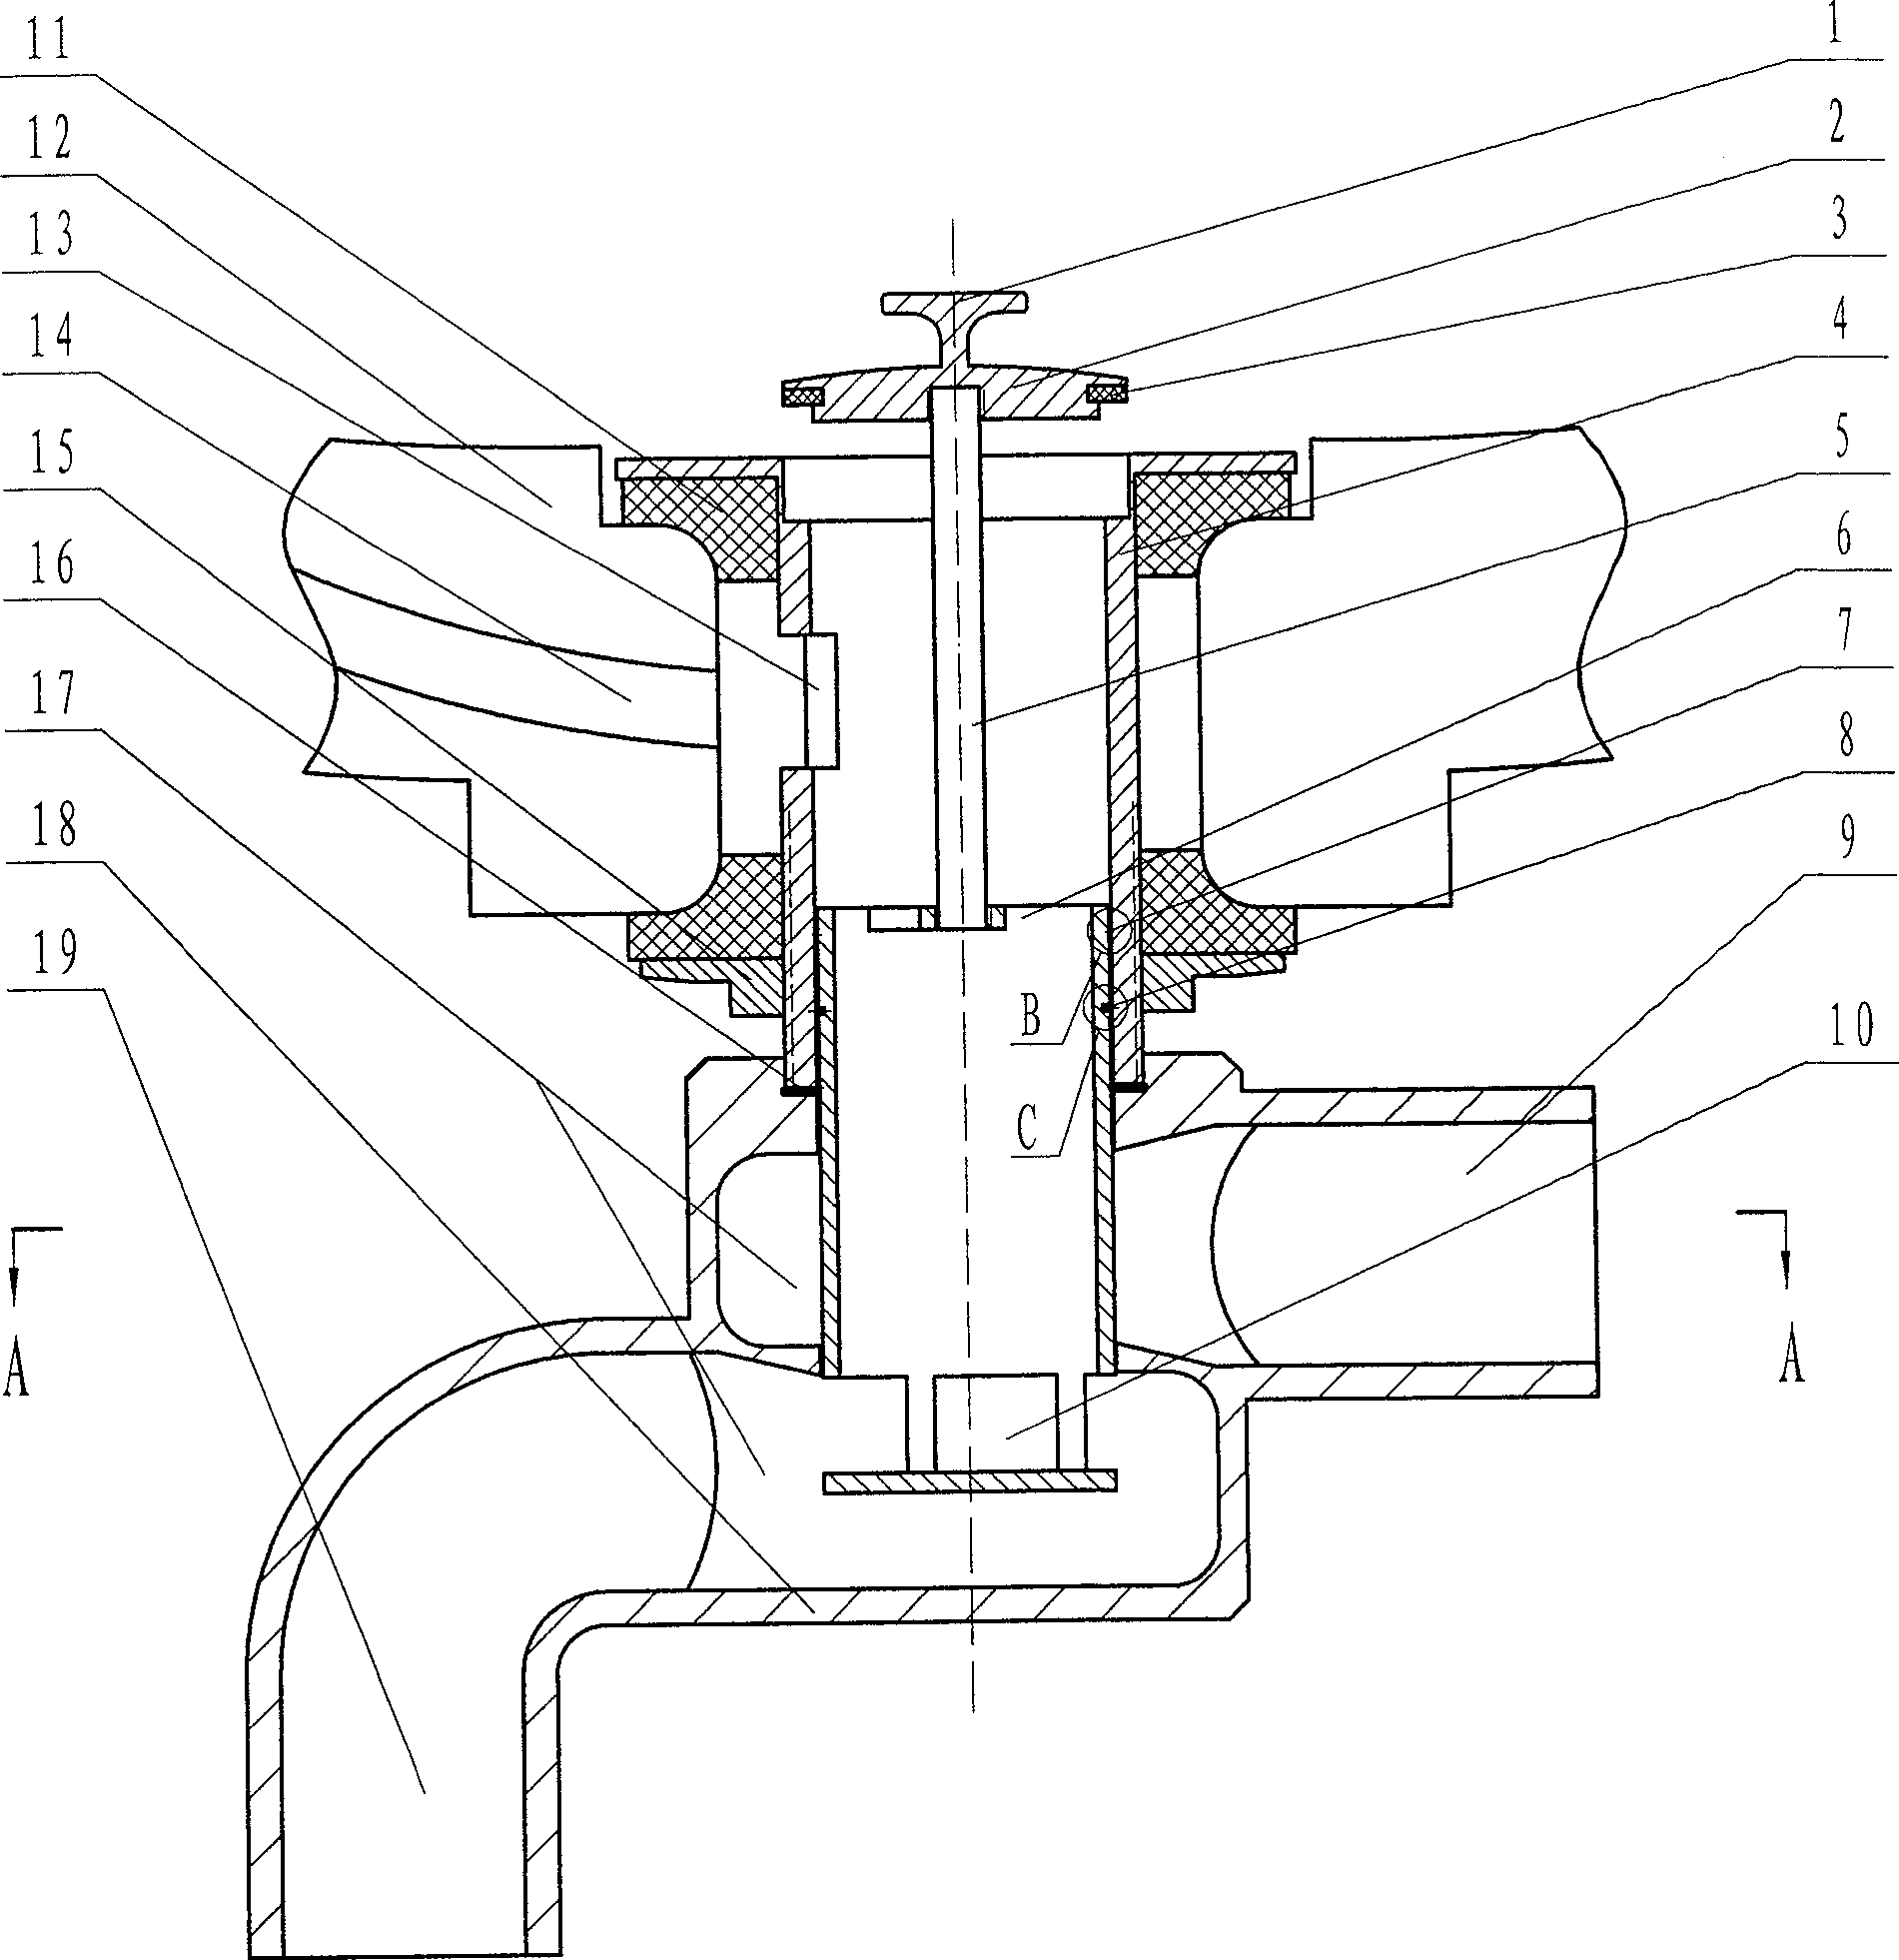 Basin launching three-way valve